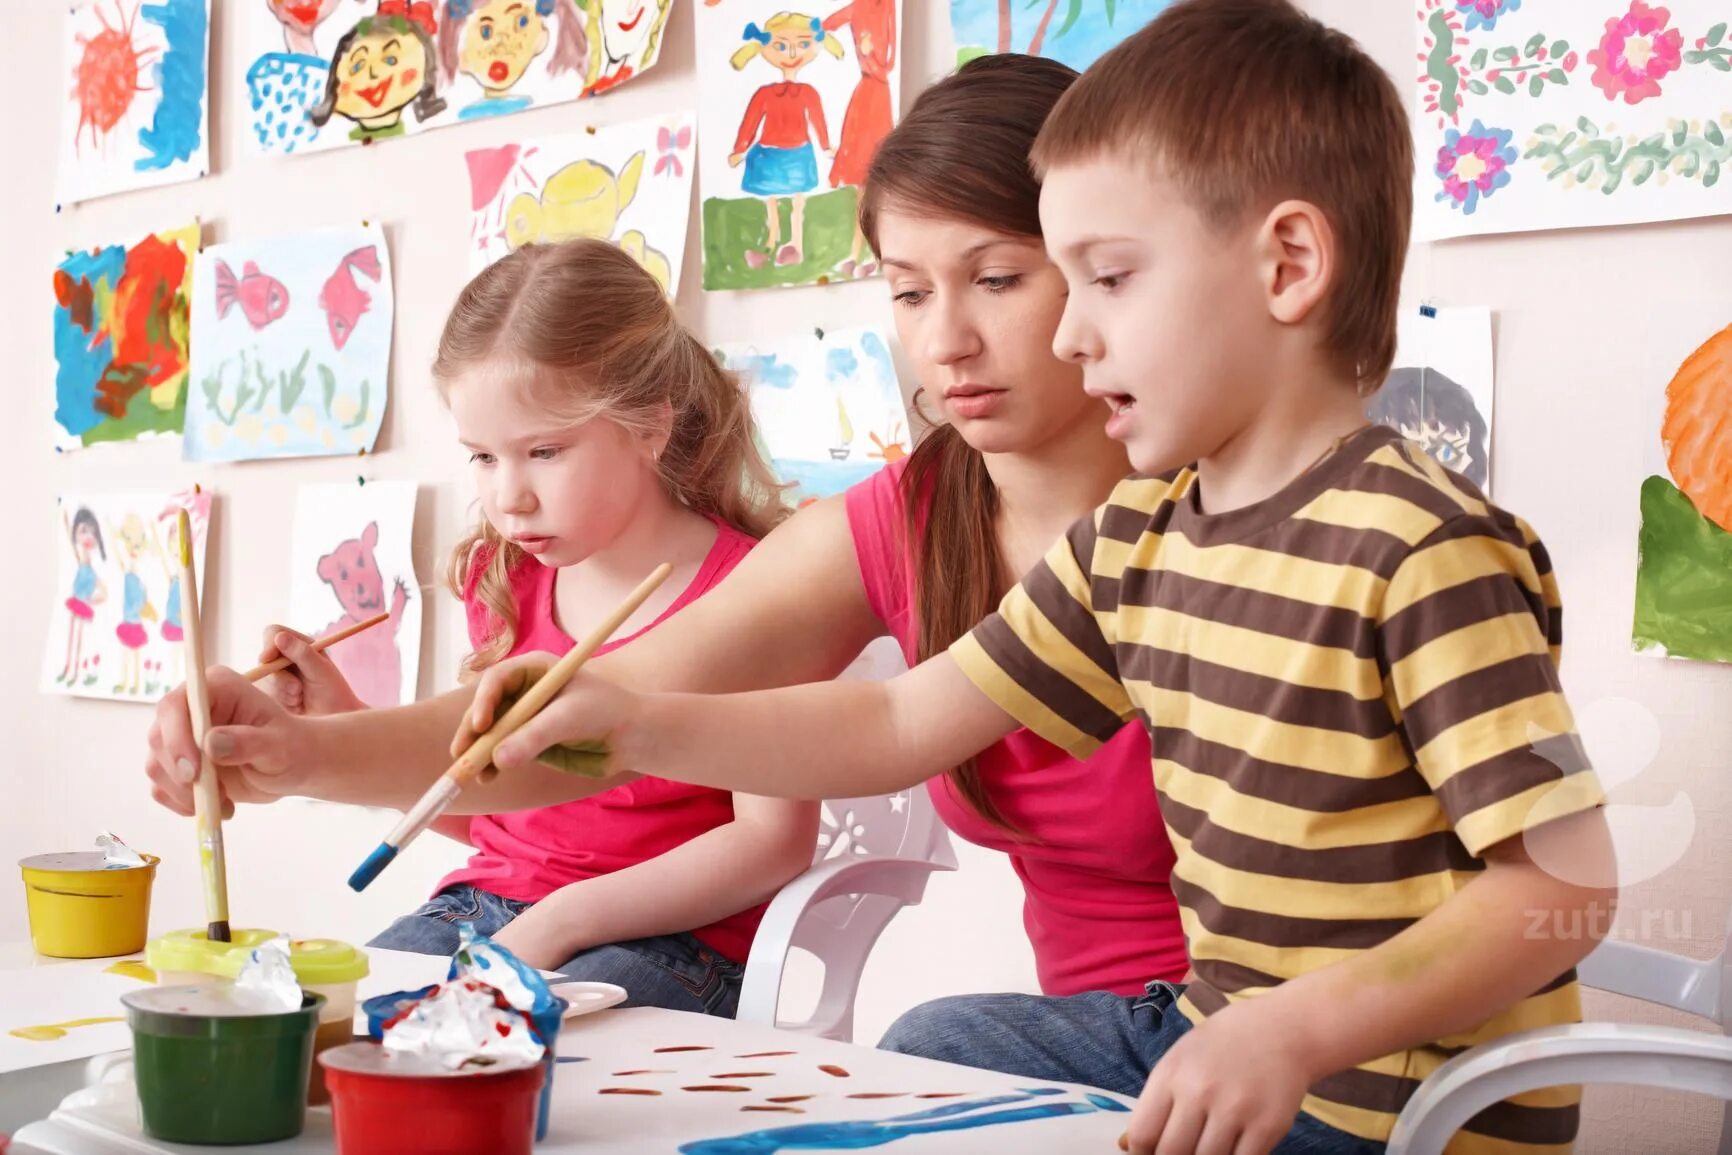 Кружок рисования для детей. Занятия рисованием с детьми. Творческие занятия для детей. Художественное творчество детей.